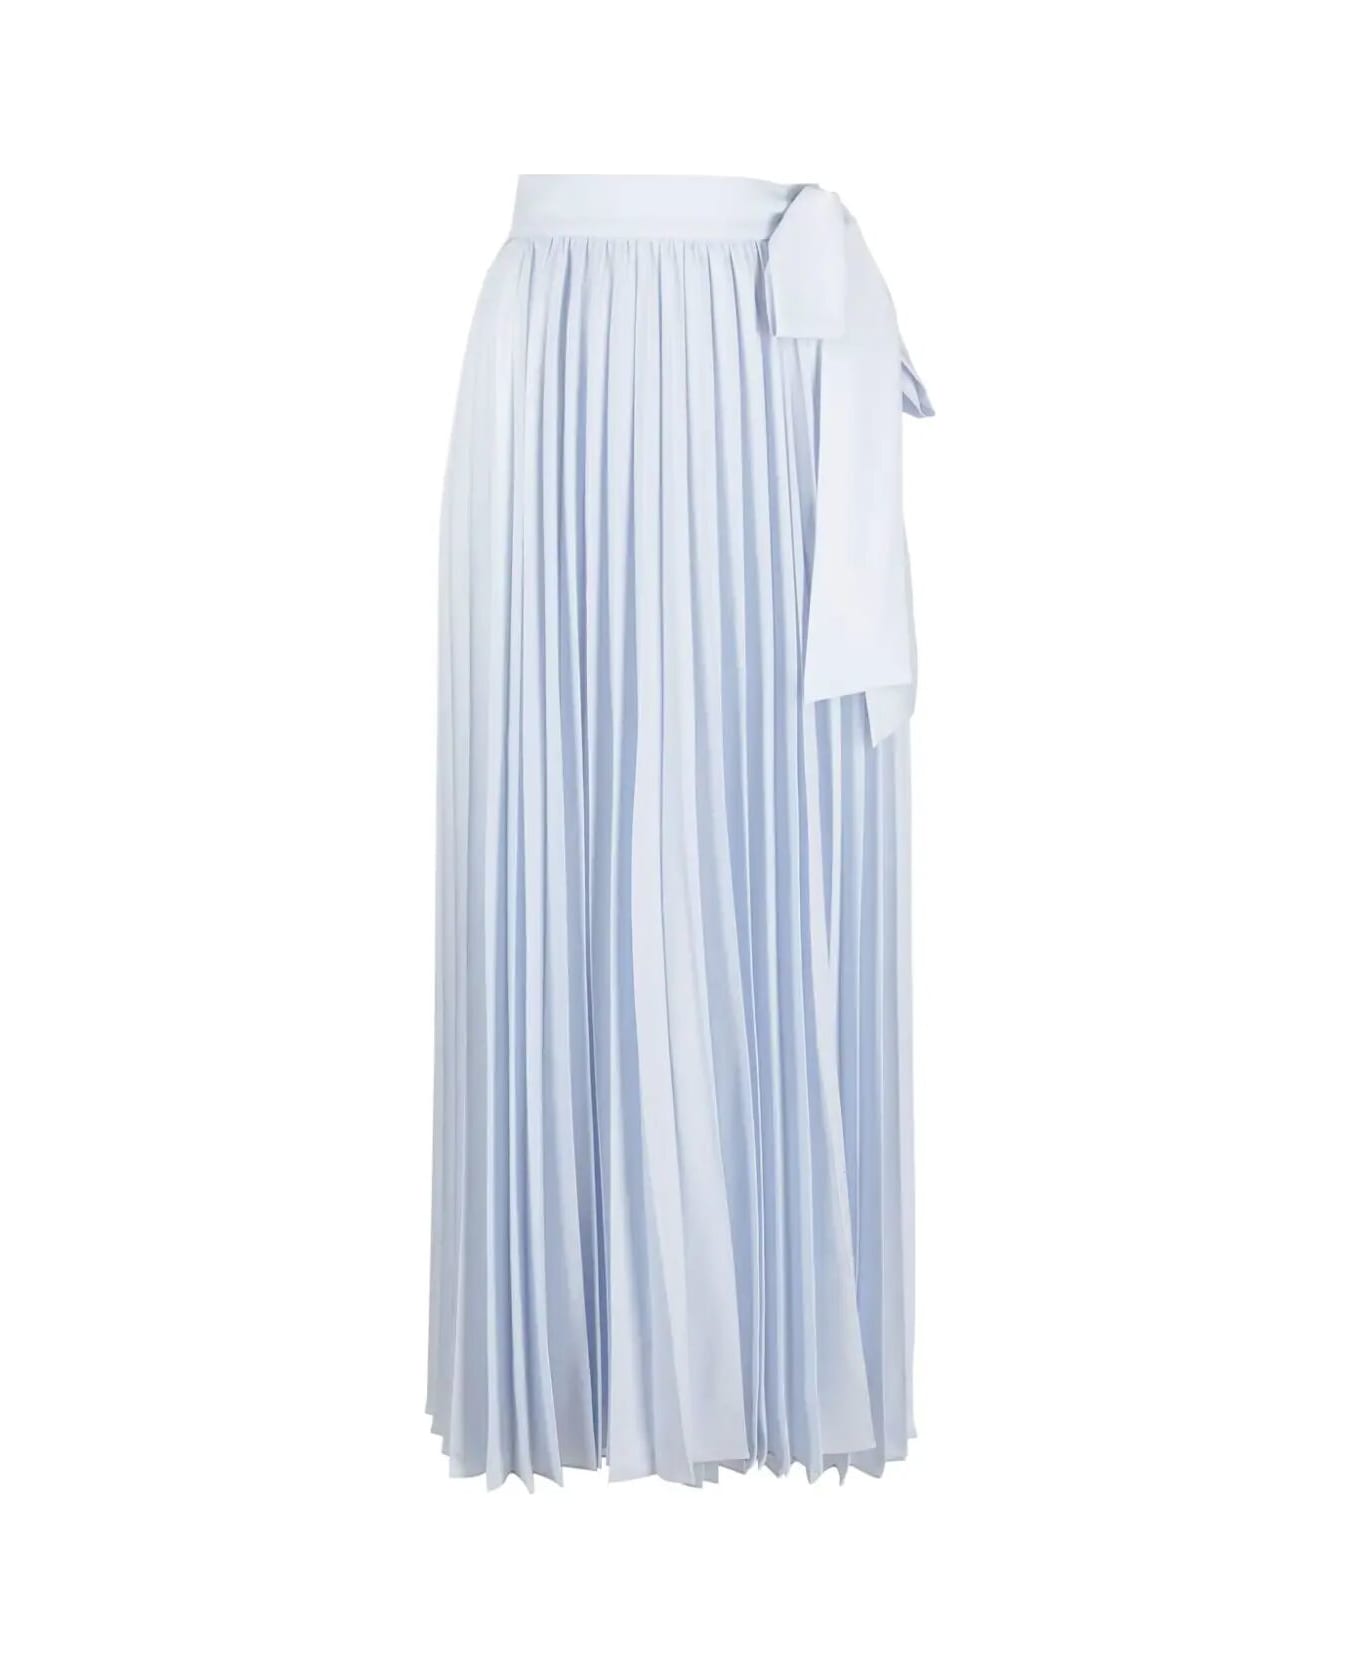 Parosh Long Pleated Skirt - Light Blue Dust